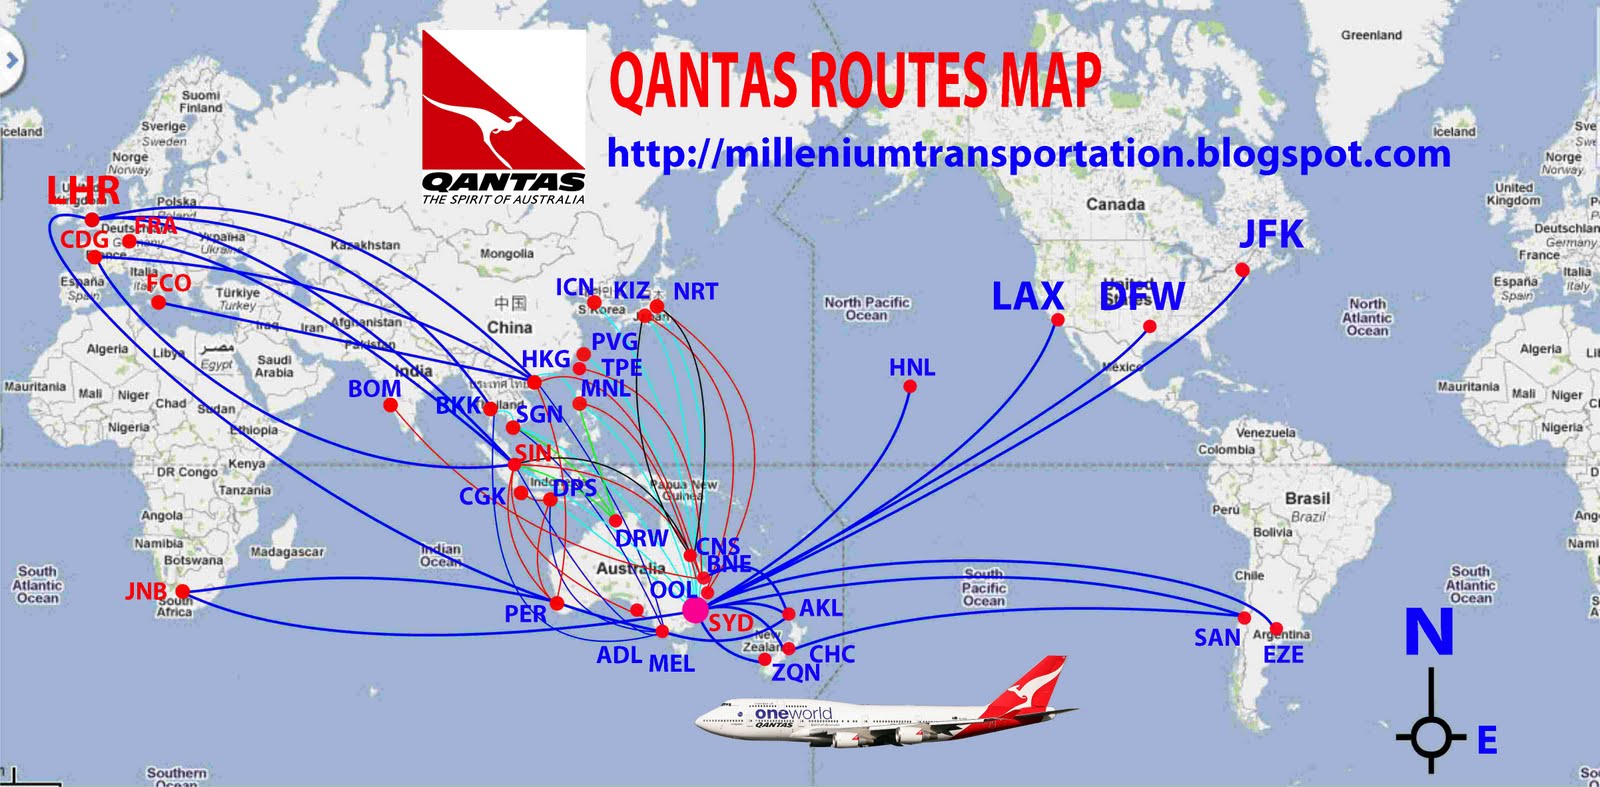 Qantas+routes+map.jpg